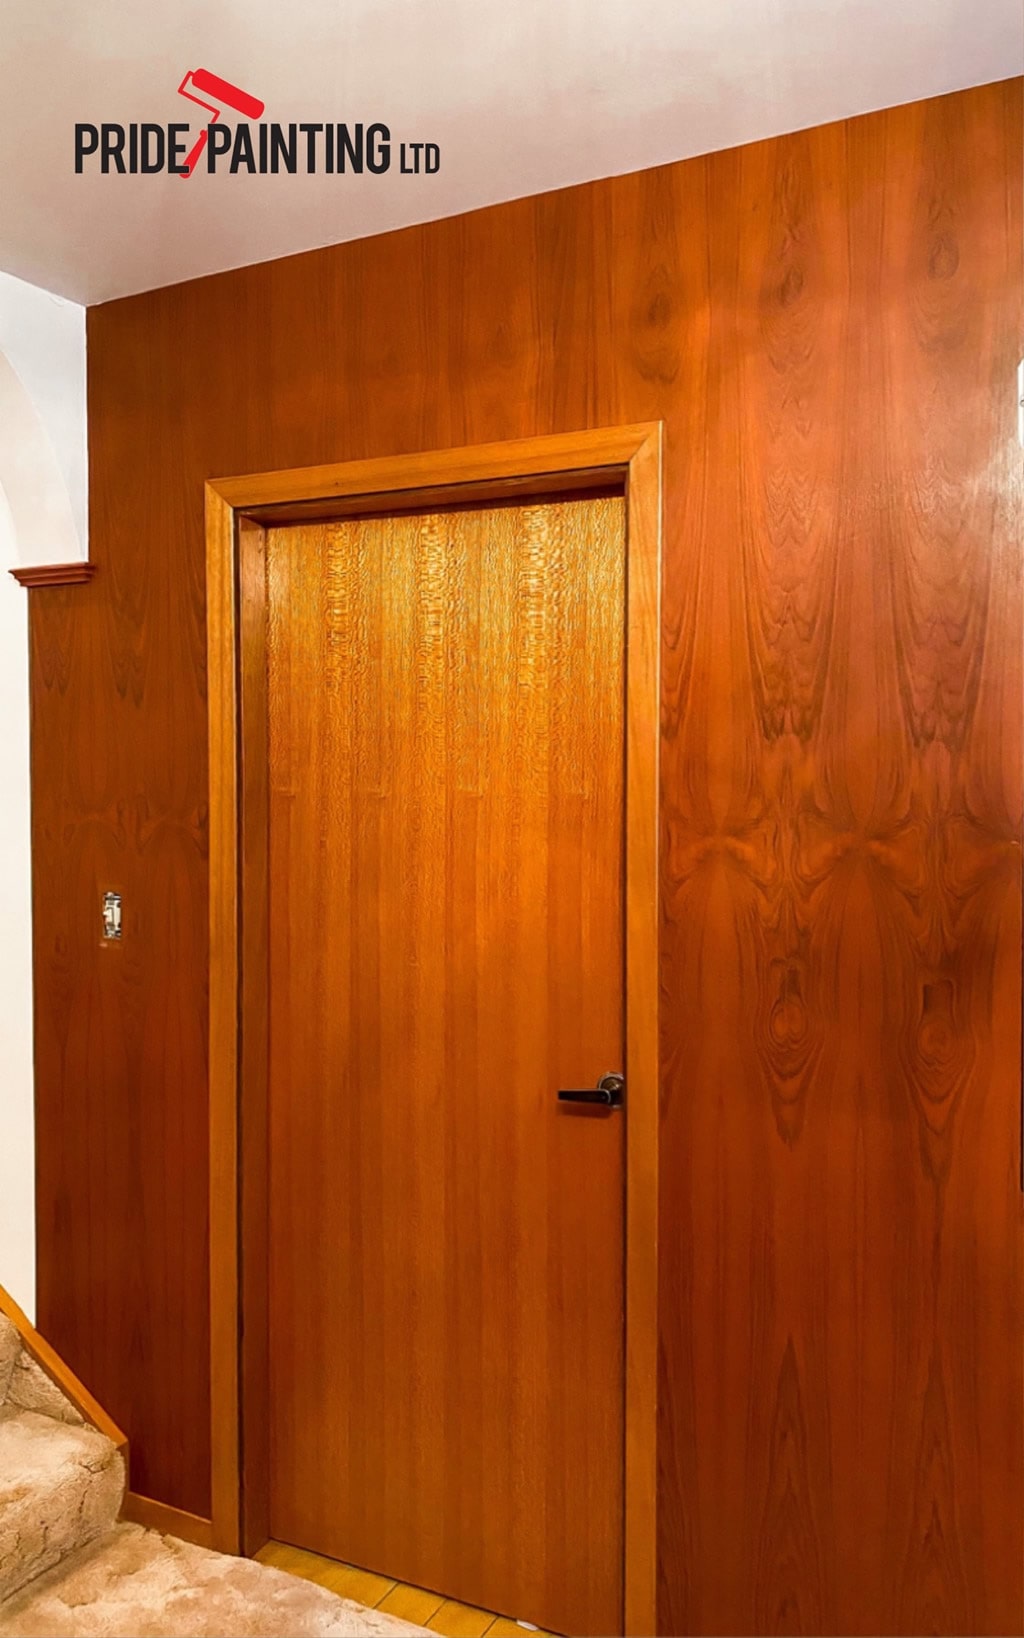 Image of doorway before being repainted professionally by Pride Painting